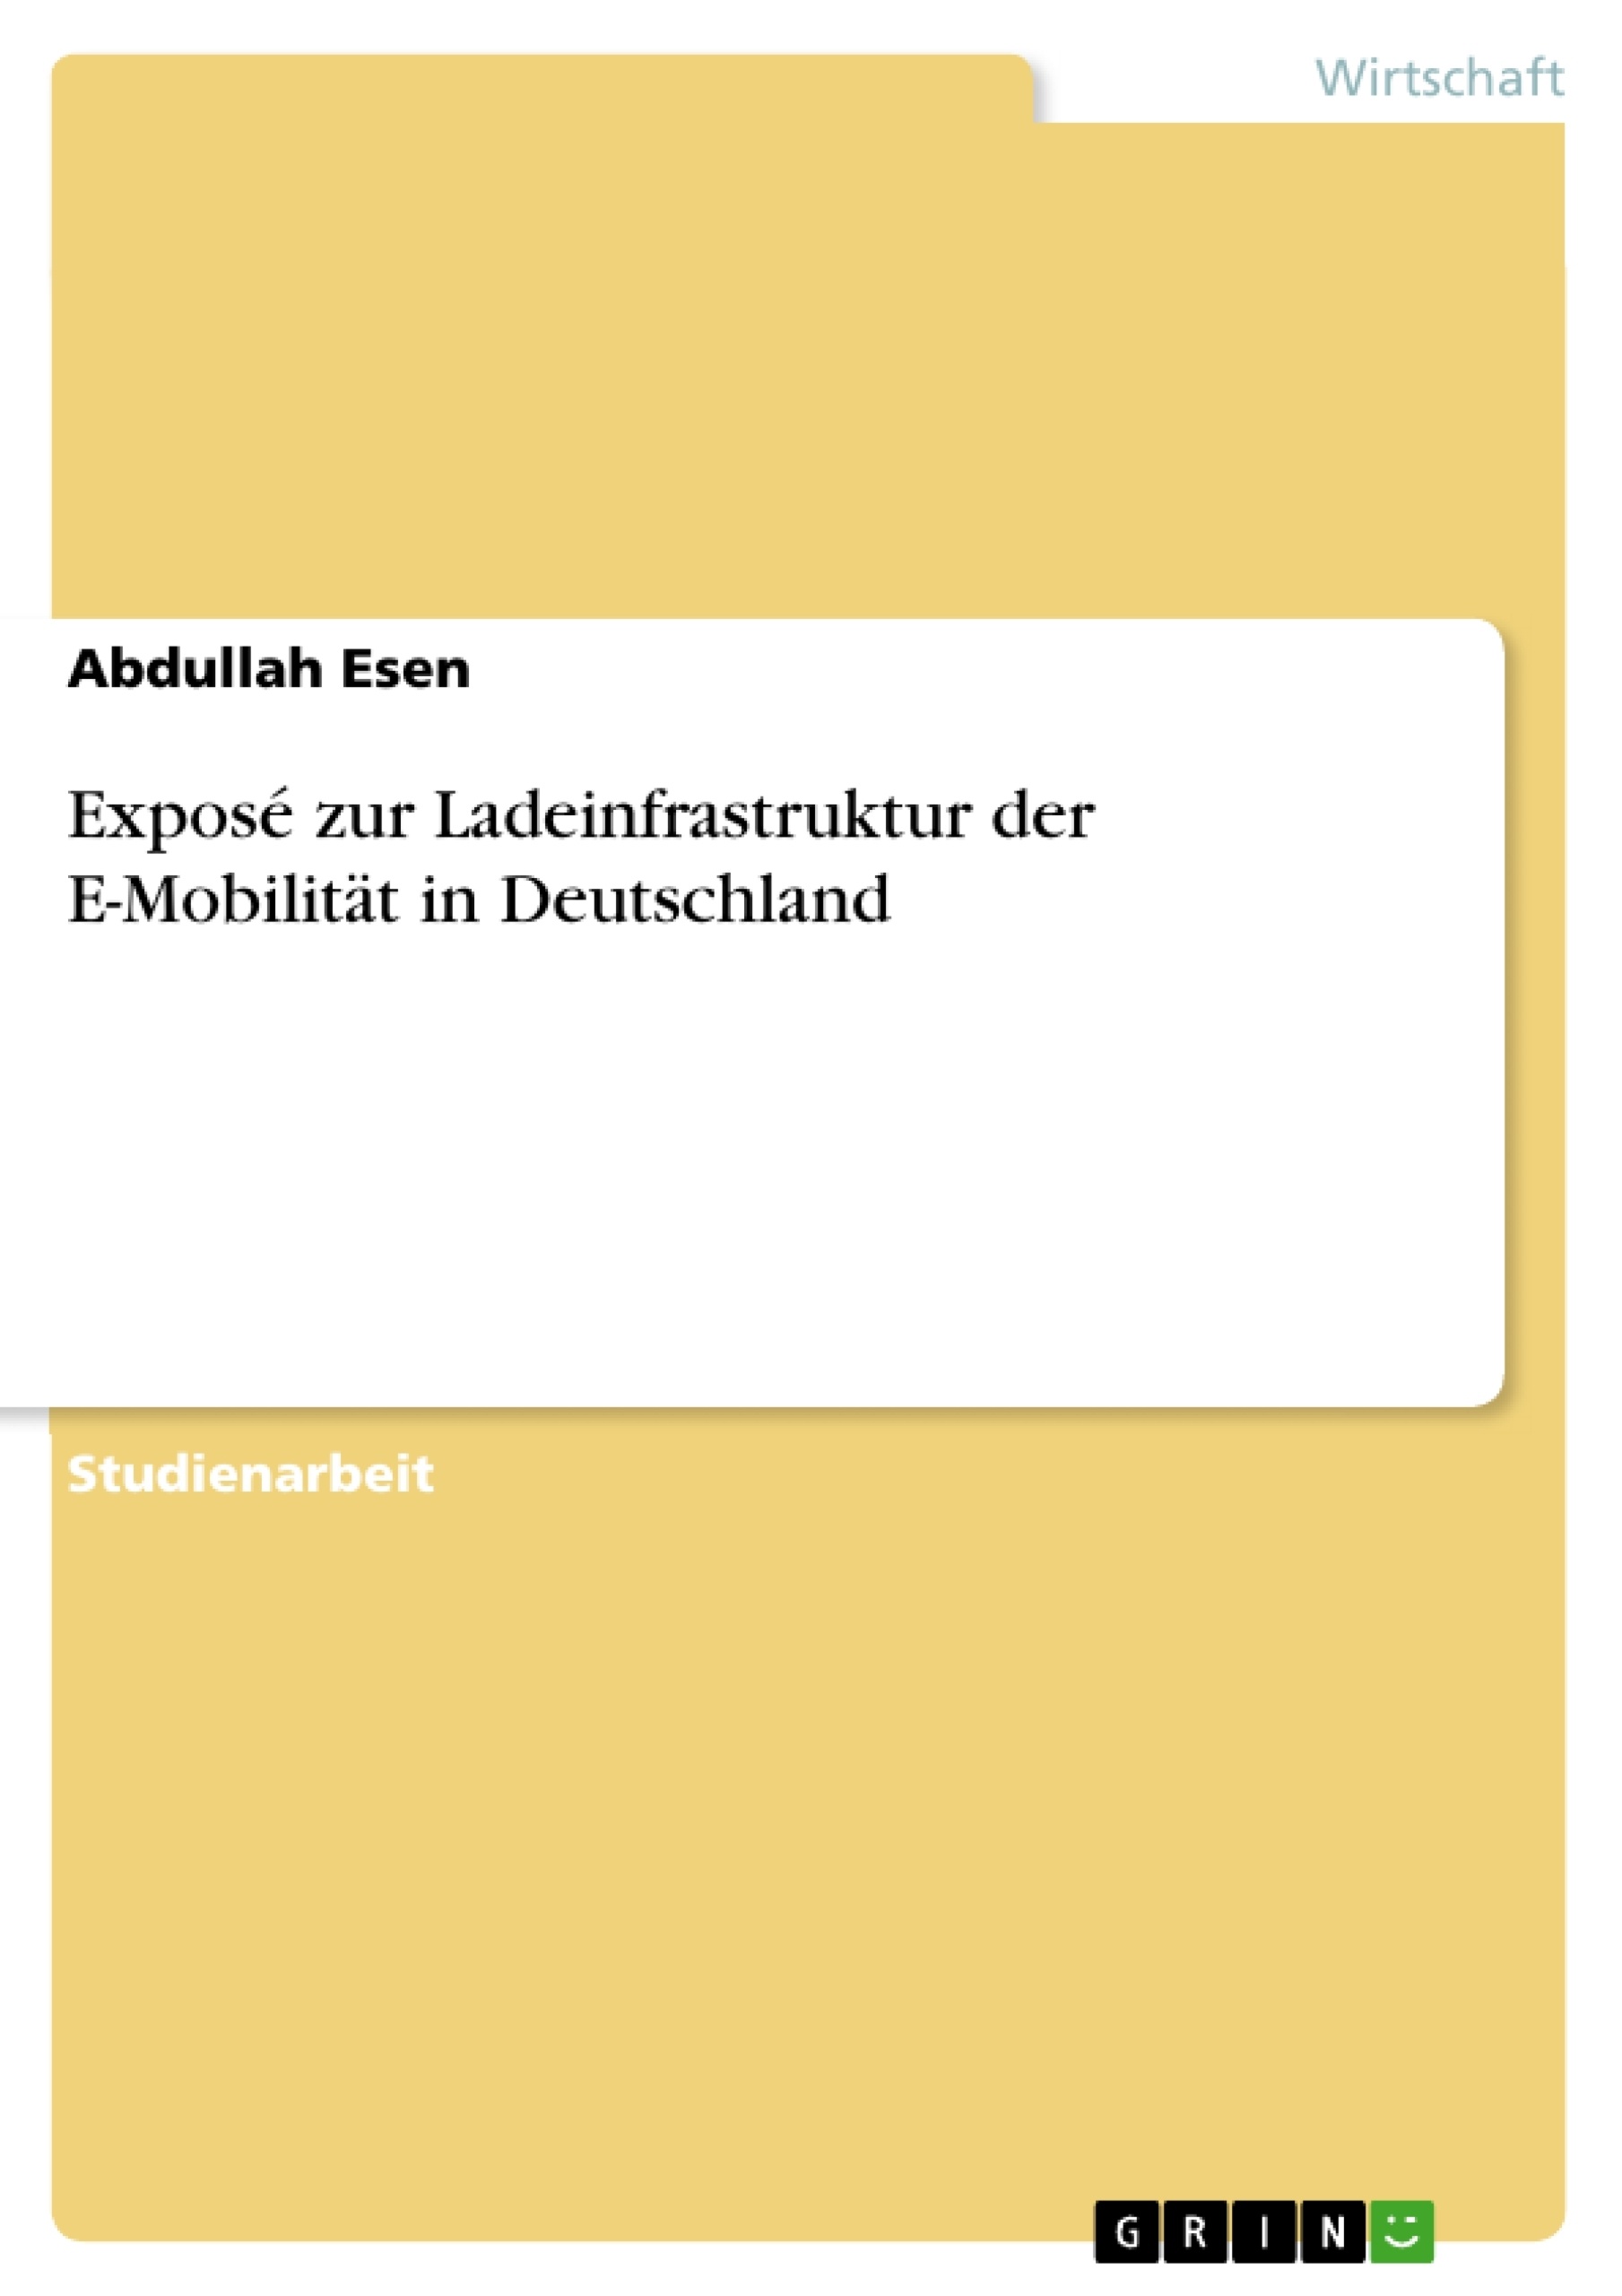 Title: Exposé zur Ladeinfrastruktur der E-Mobilität in Deutschland